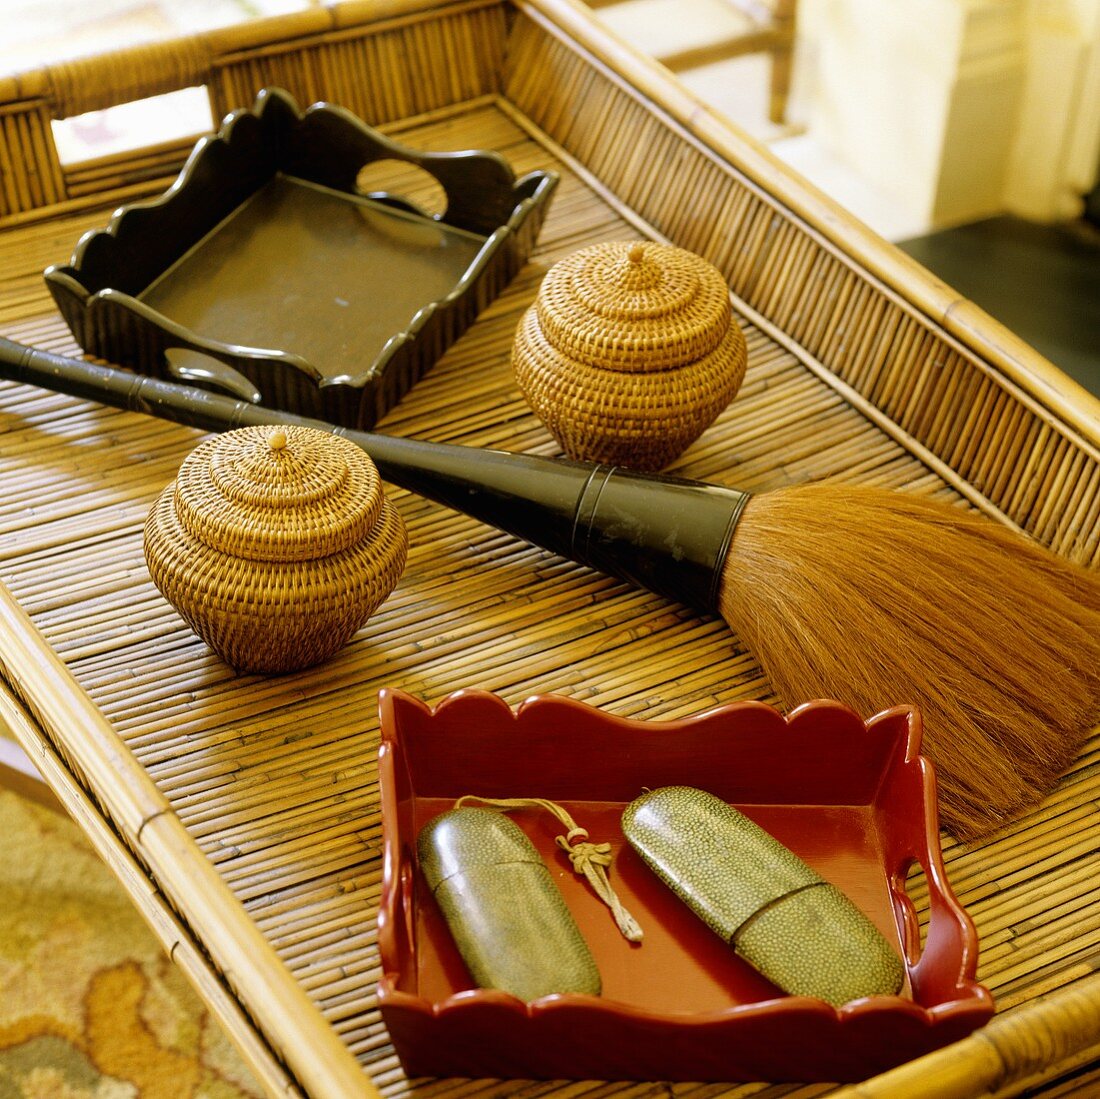 Stillleben auf einem Bambustablett mit lackierten Holzschalen, Minikorbgefässen und einem bauschigen Pinsel